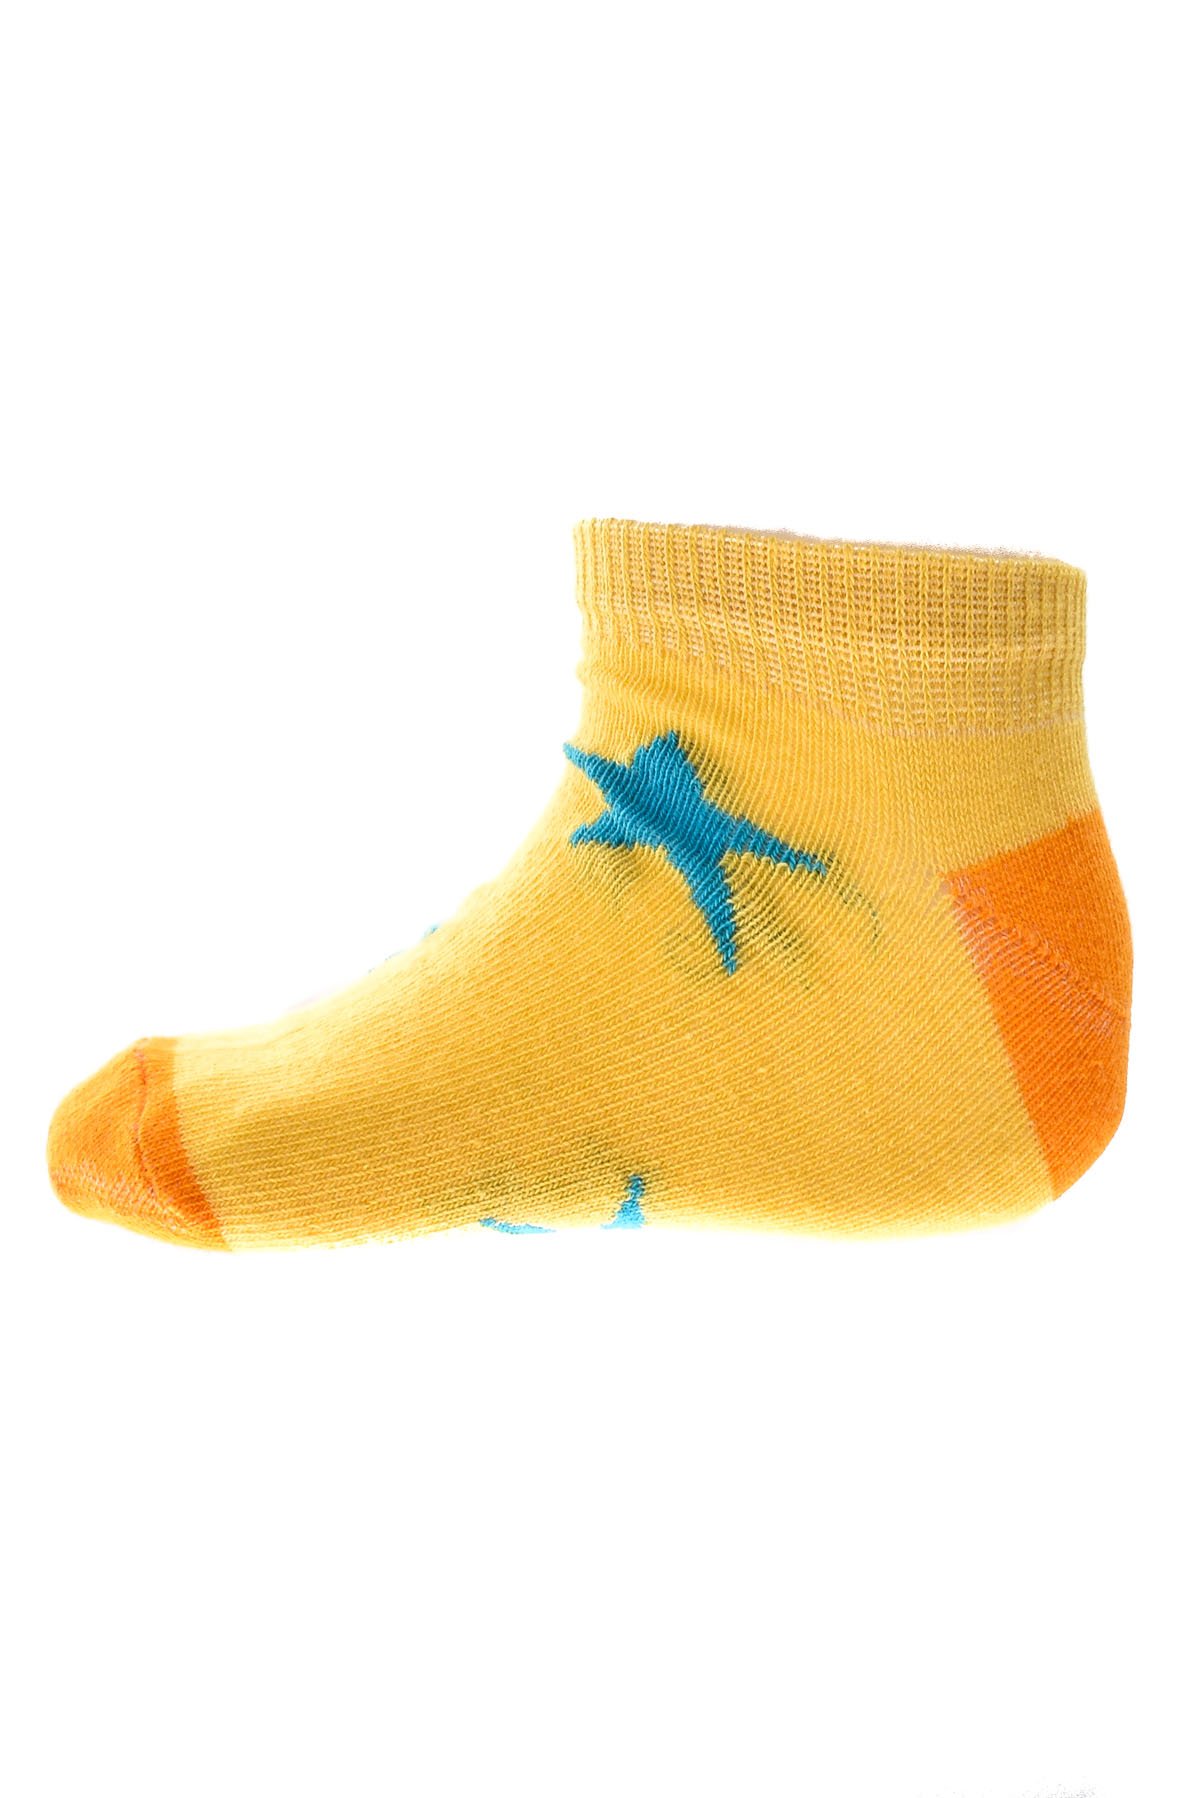 Παιδικές κάλτσες - BebeLino - 0